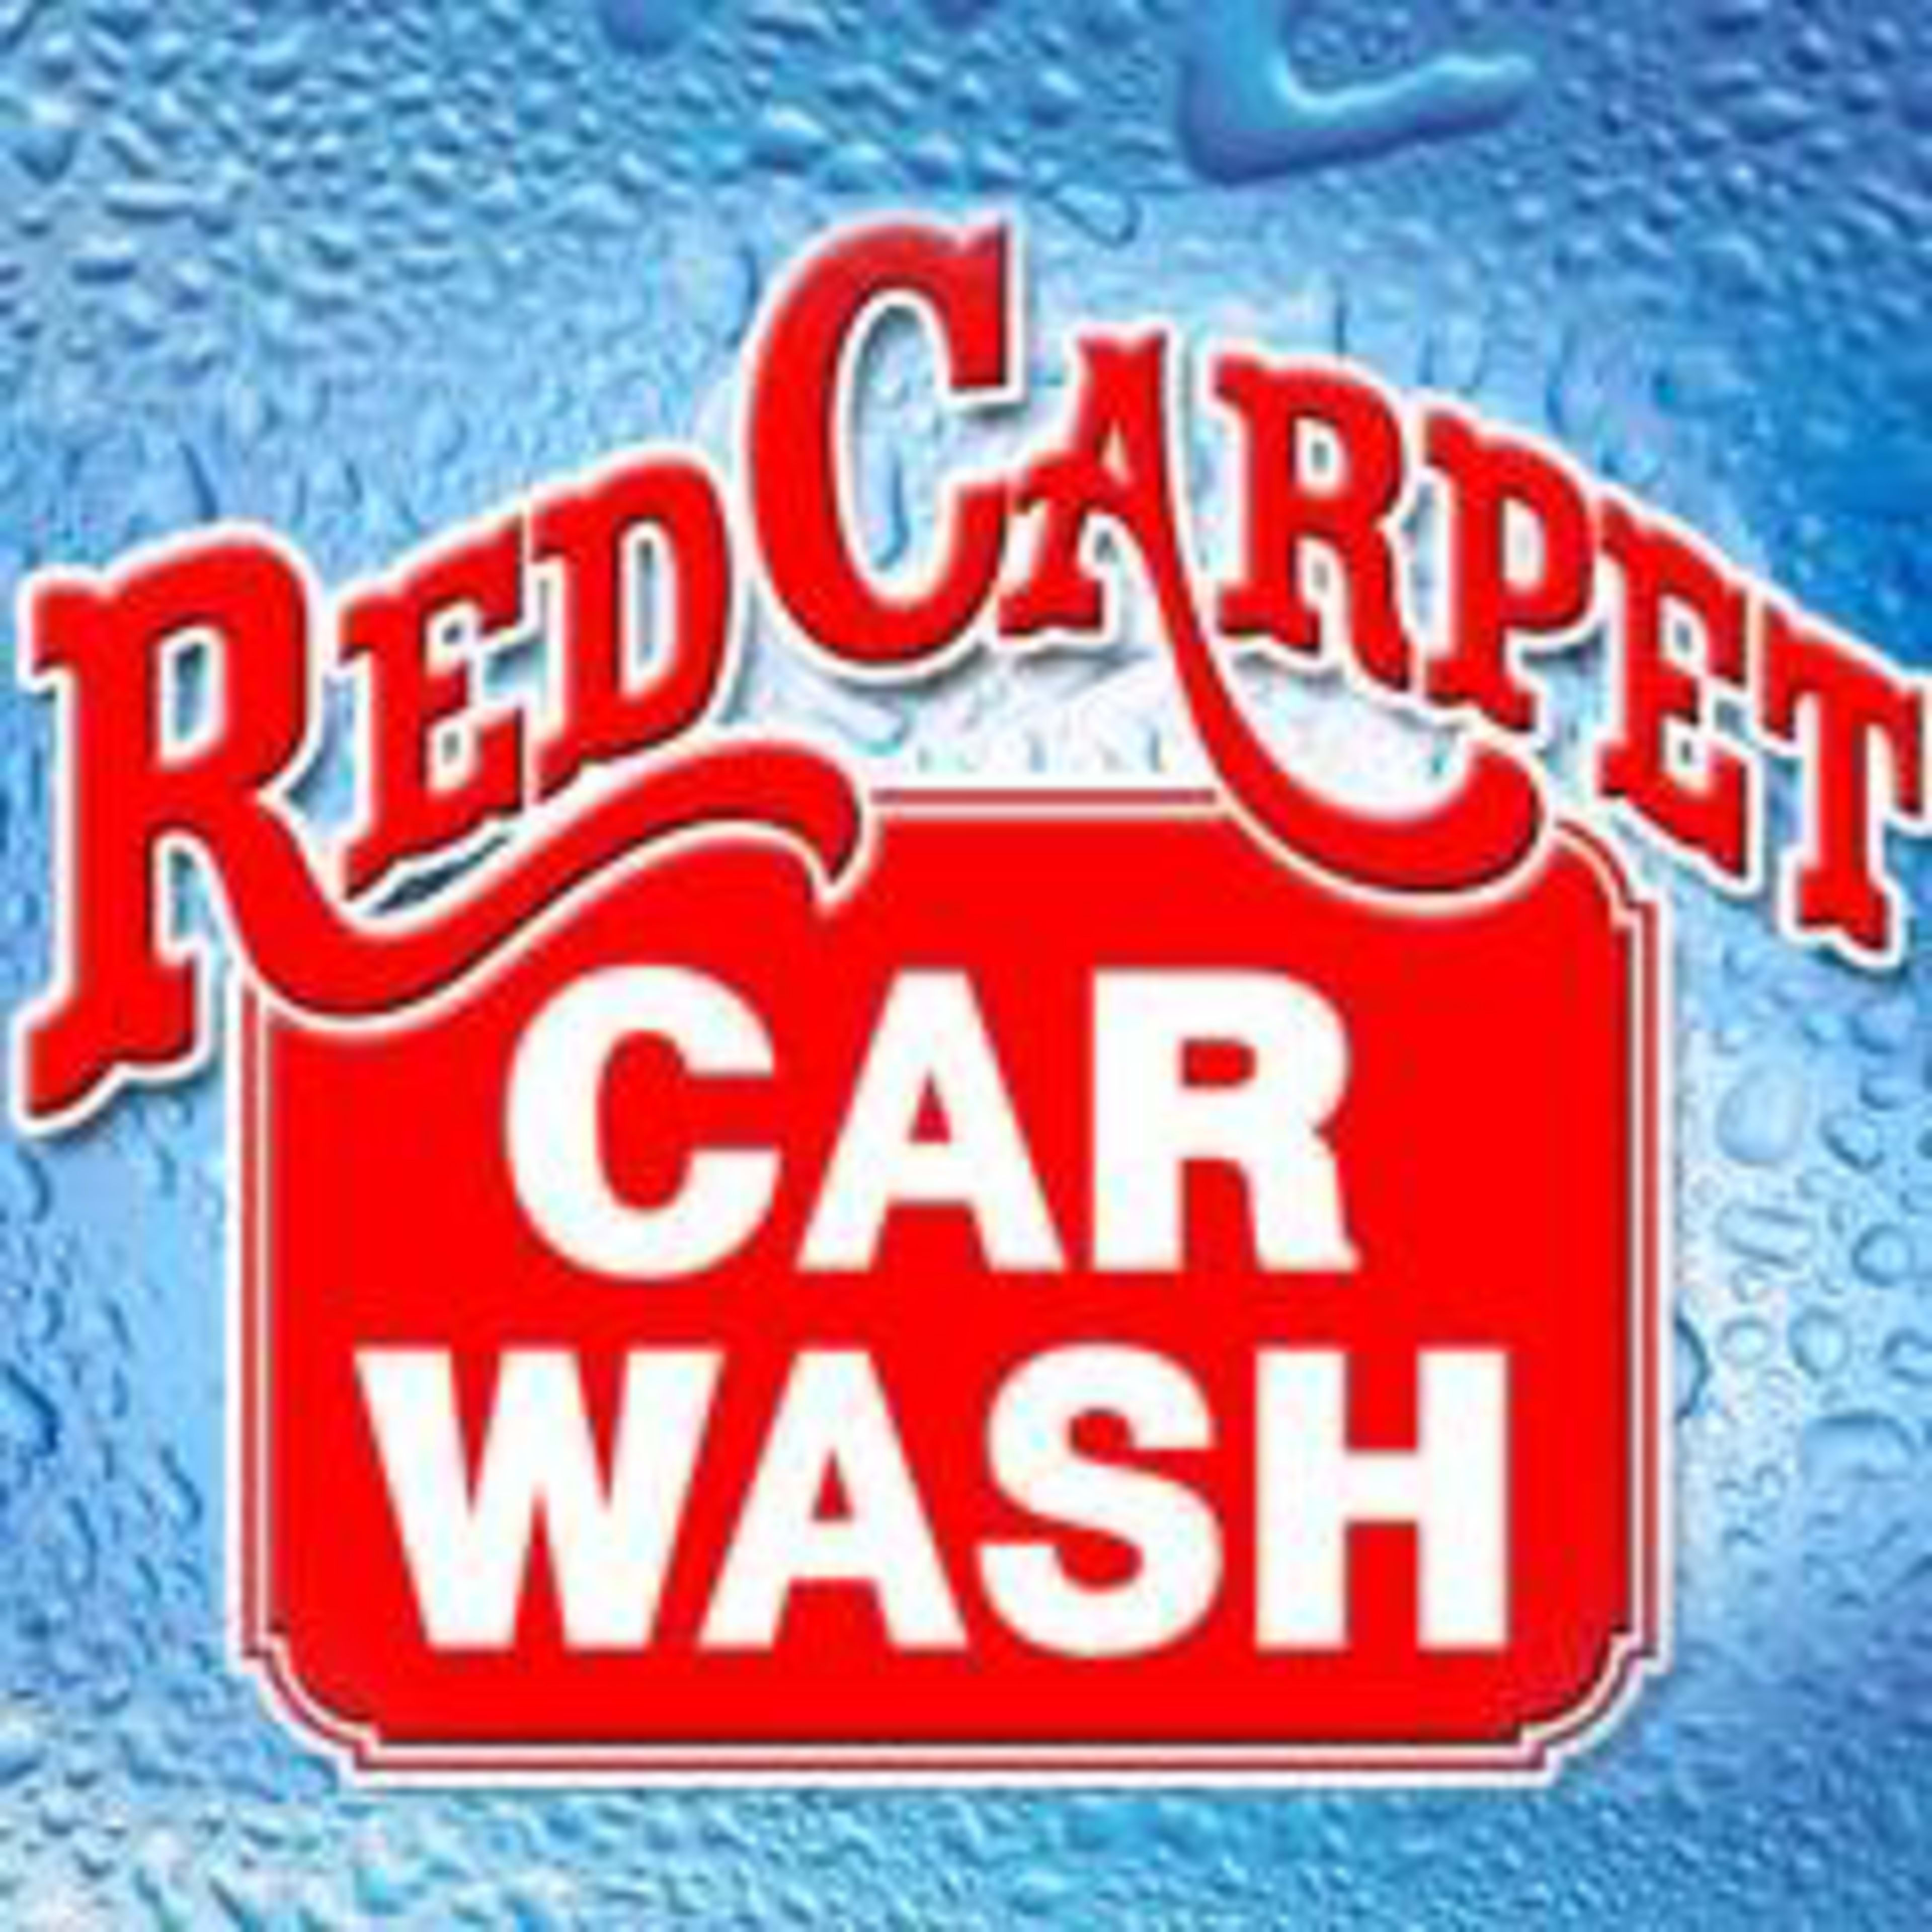 Red Carpet Car WashCode